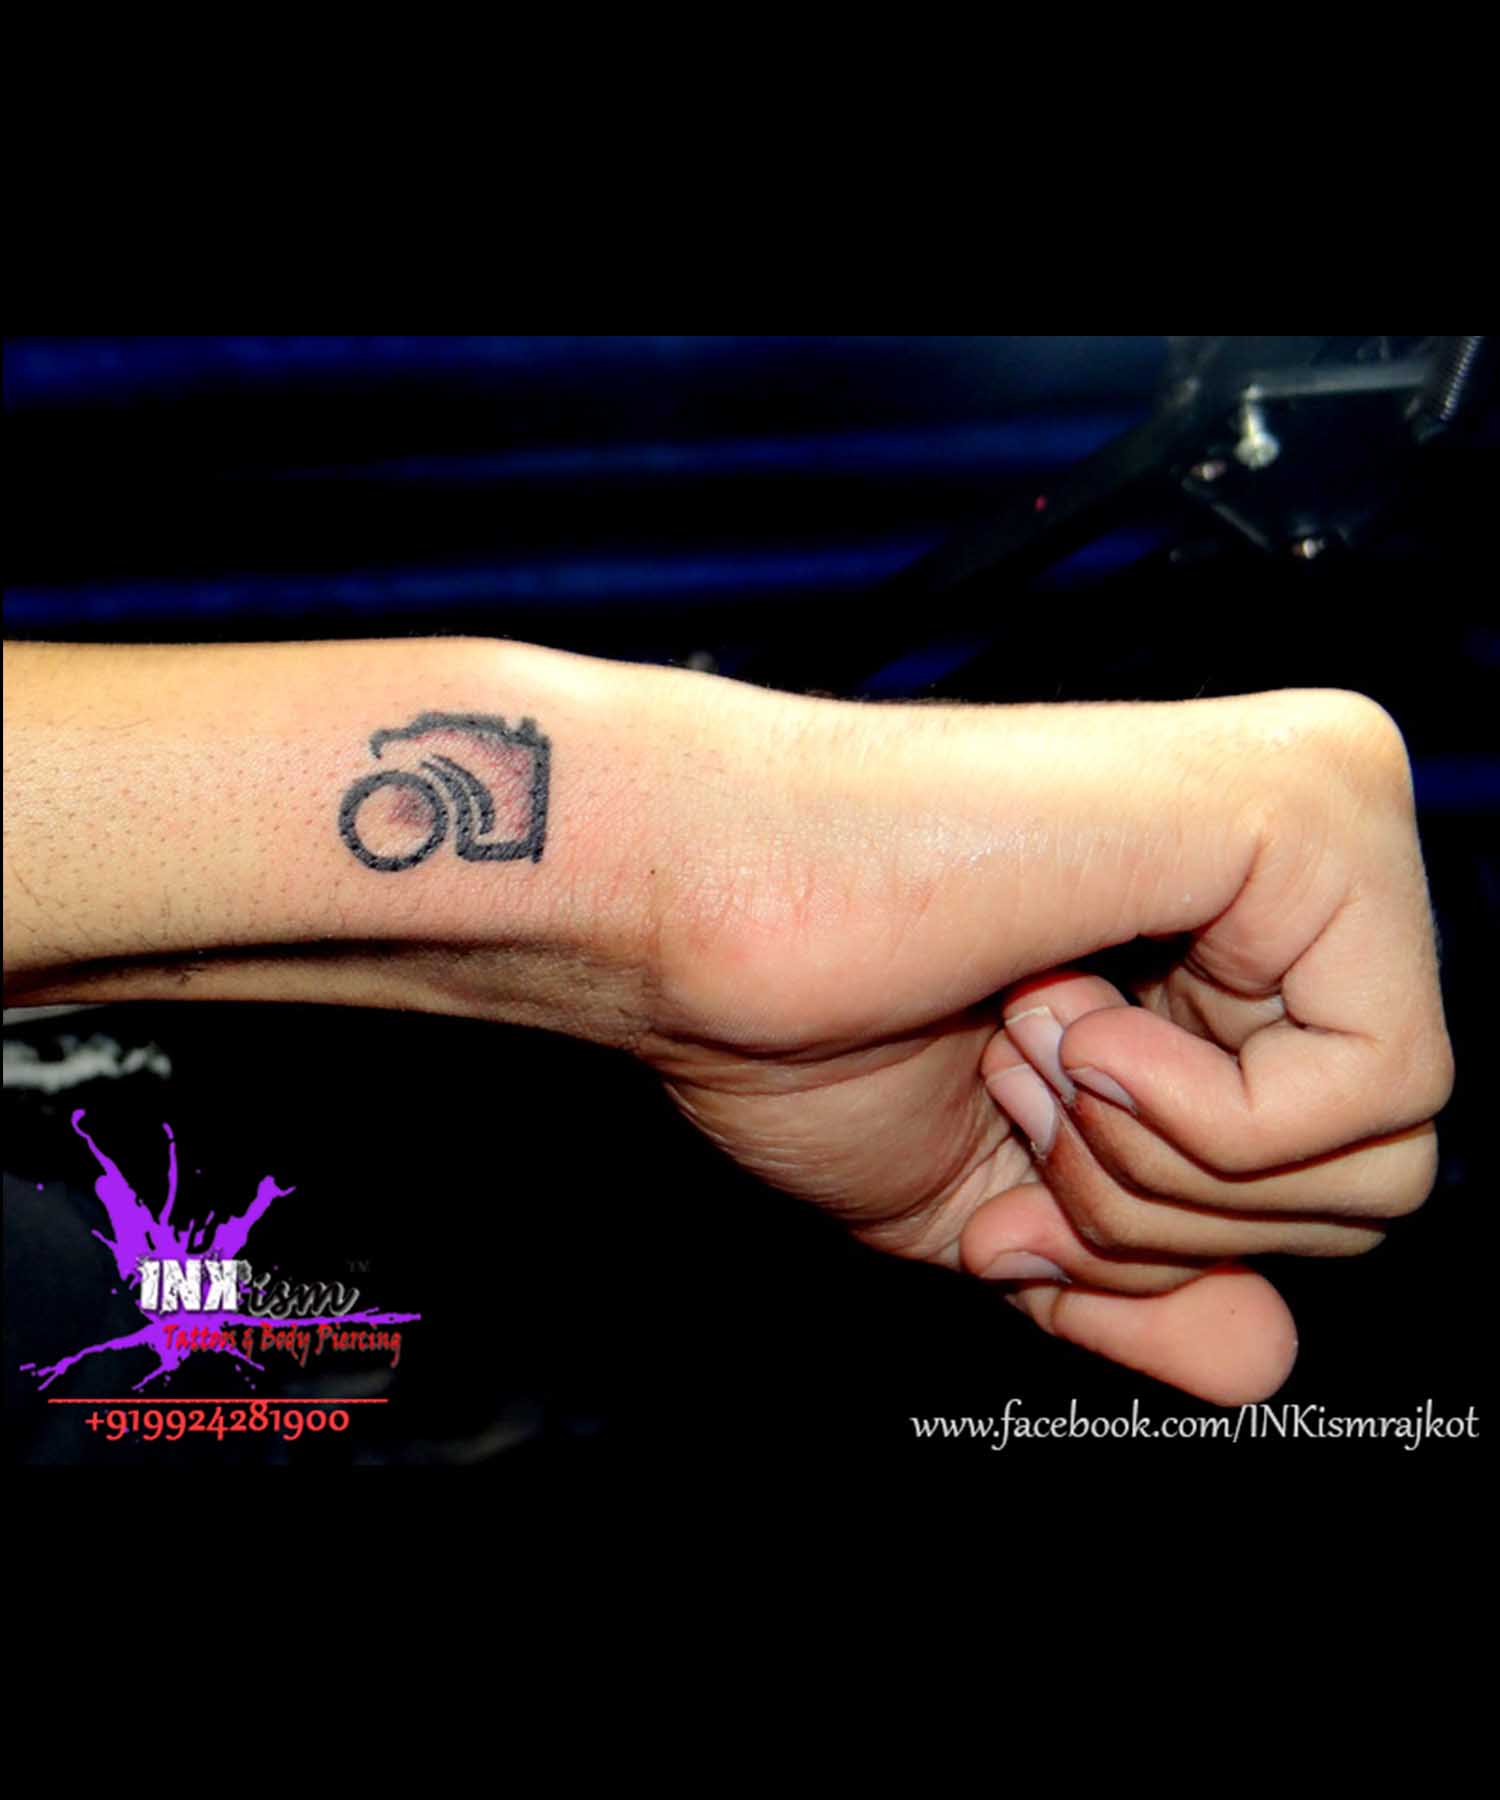 Minimalist Tattoo, Camera Tattoo, Wrist tattoo, Inkism tattoo and body piercing rajkot gujarat